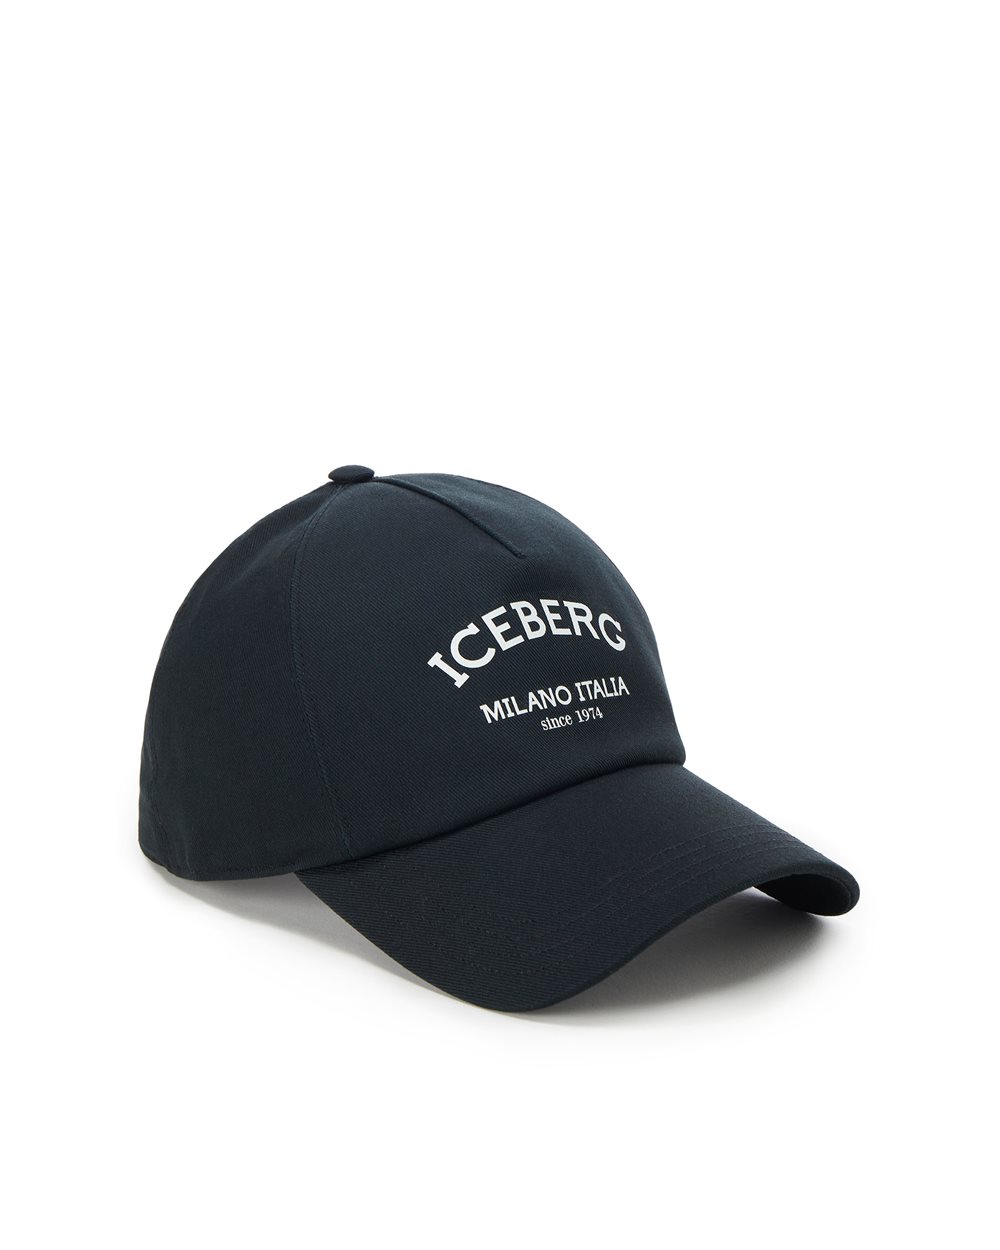 Cotton gabardine baseball cap - carosello preview uomo | Iceberg - Official Website